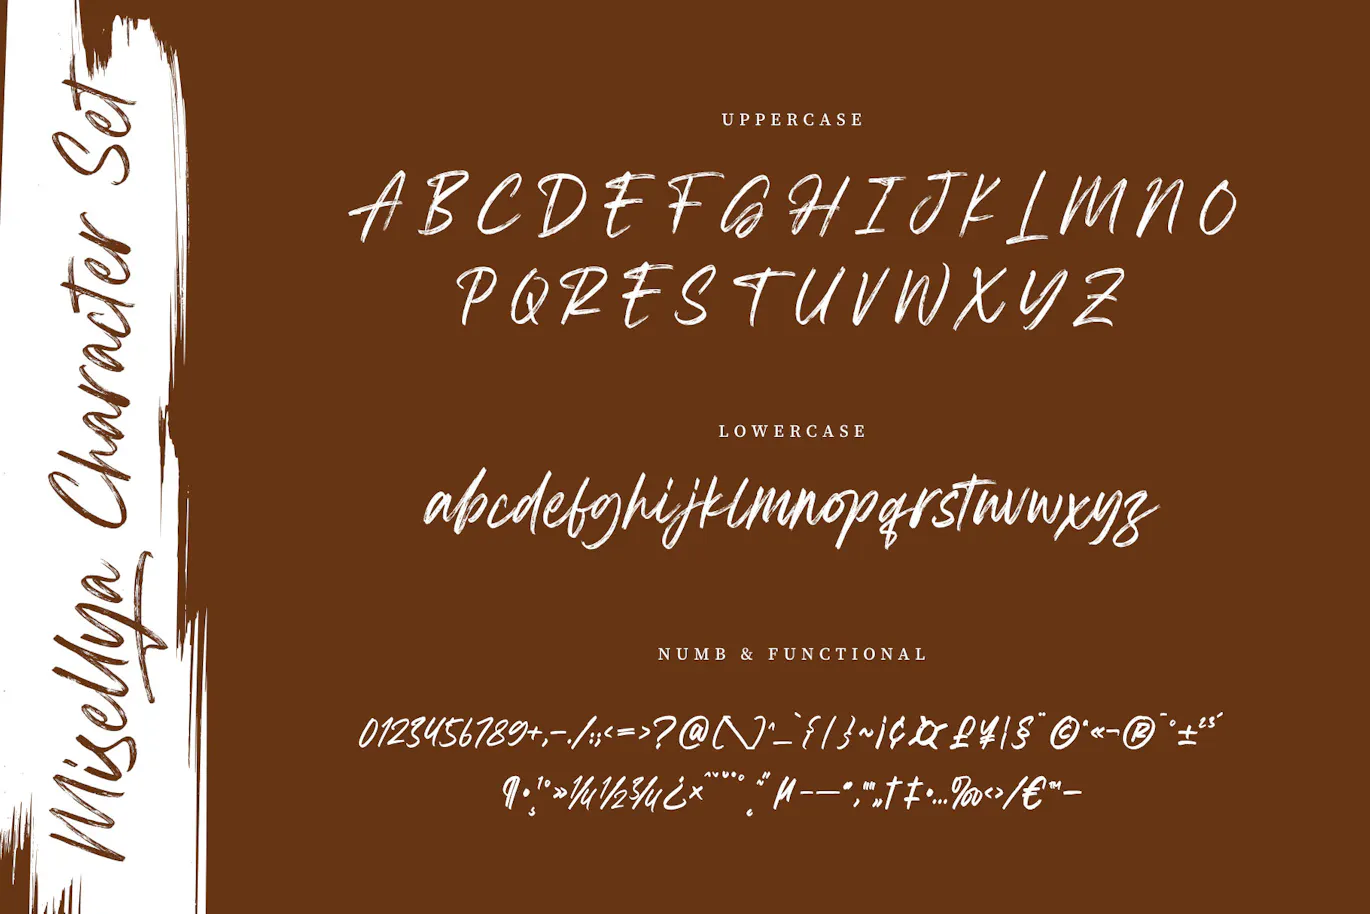 品牌推广包装设计的英文手写笔刷字体 - Misellya 设计字体 第9张